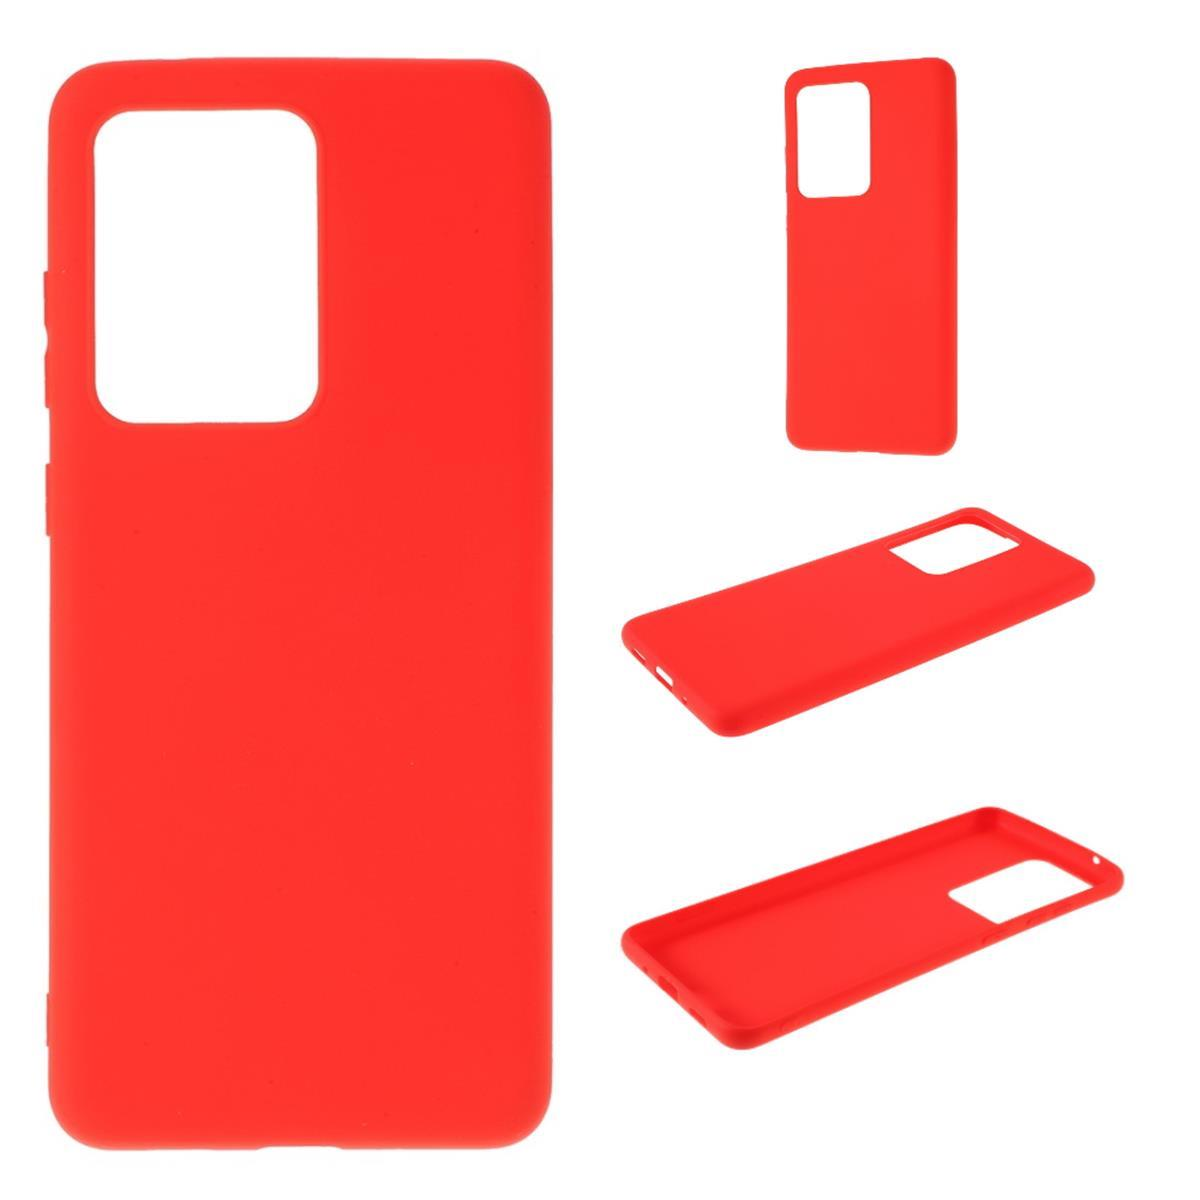 COVERKINGZ Handycase aus Silikon, Backcover, Rot / Redmi Prime, Redmi Xiaomi, 10 10